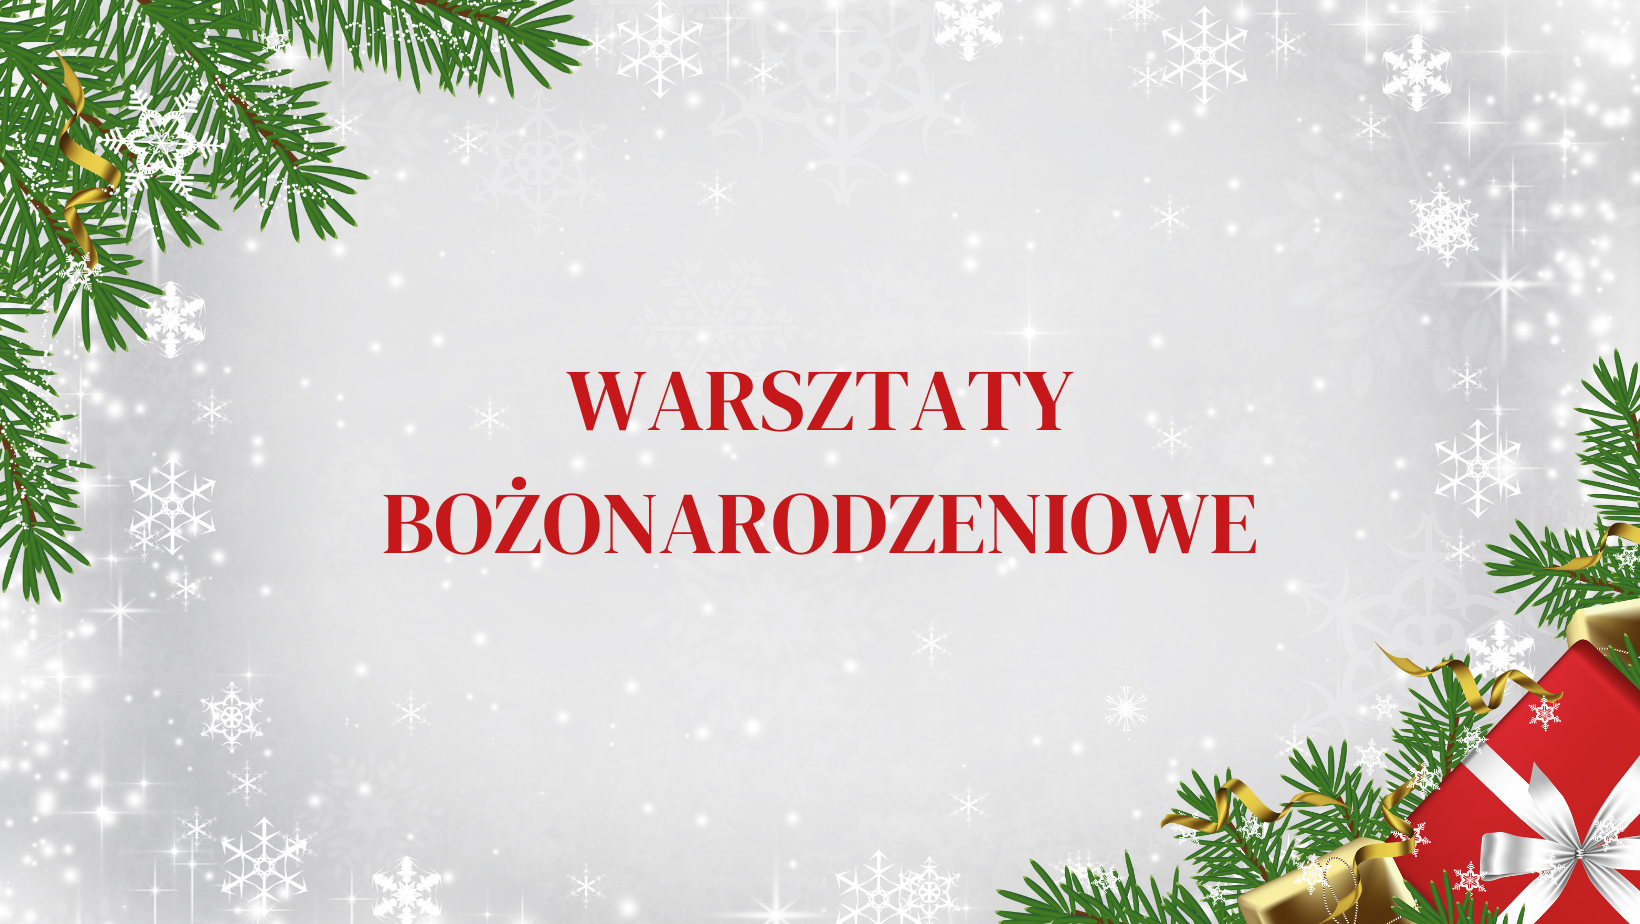 You are currently viewing Warsztaty Bożonarodzeniowe